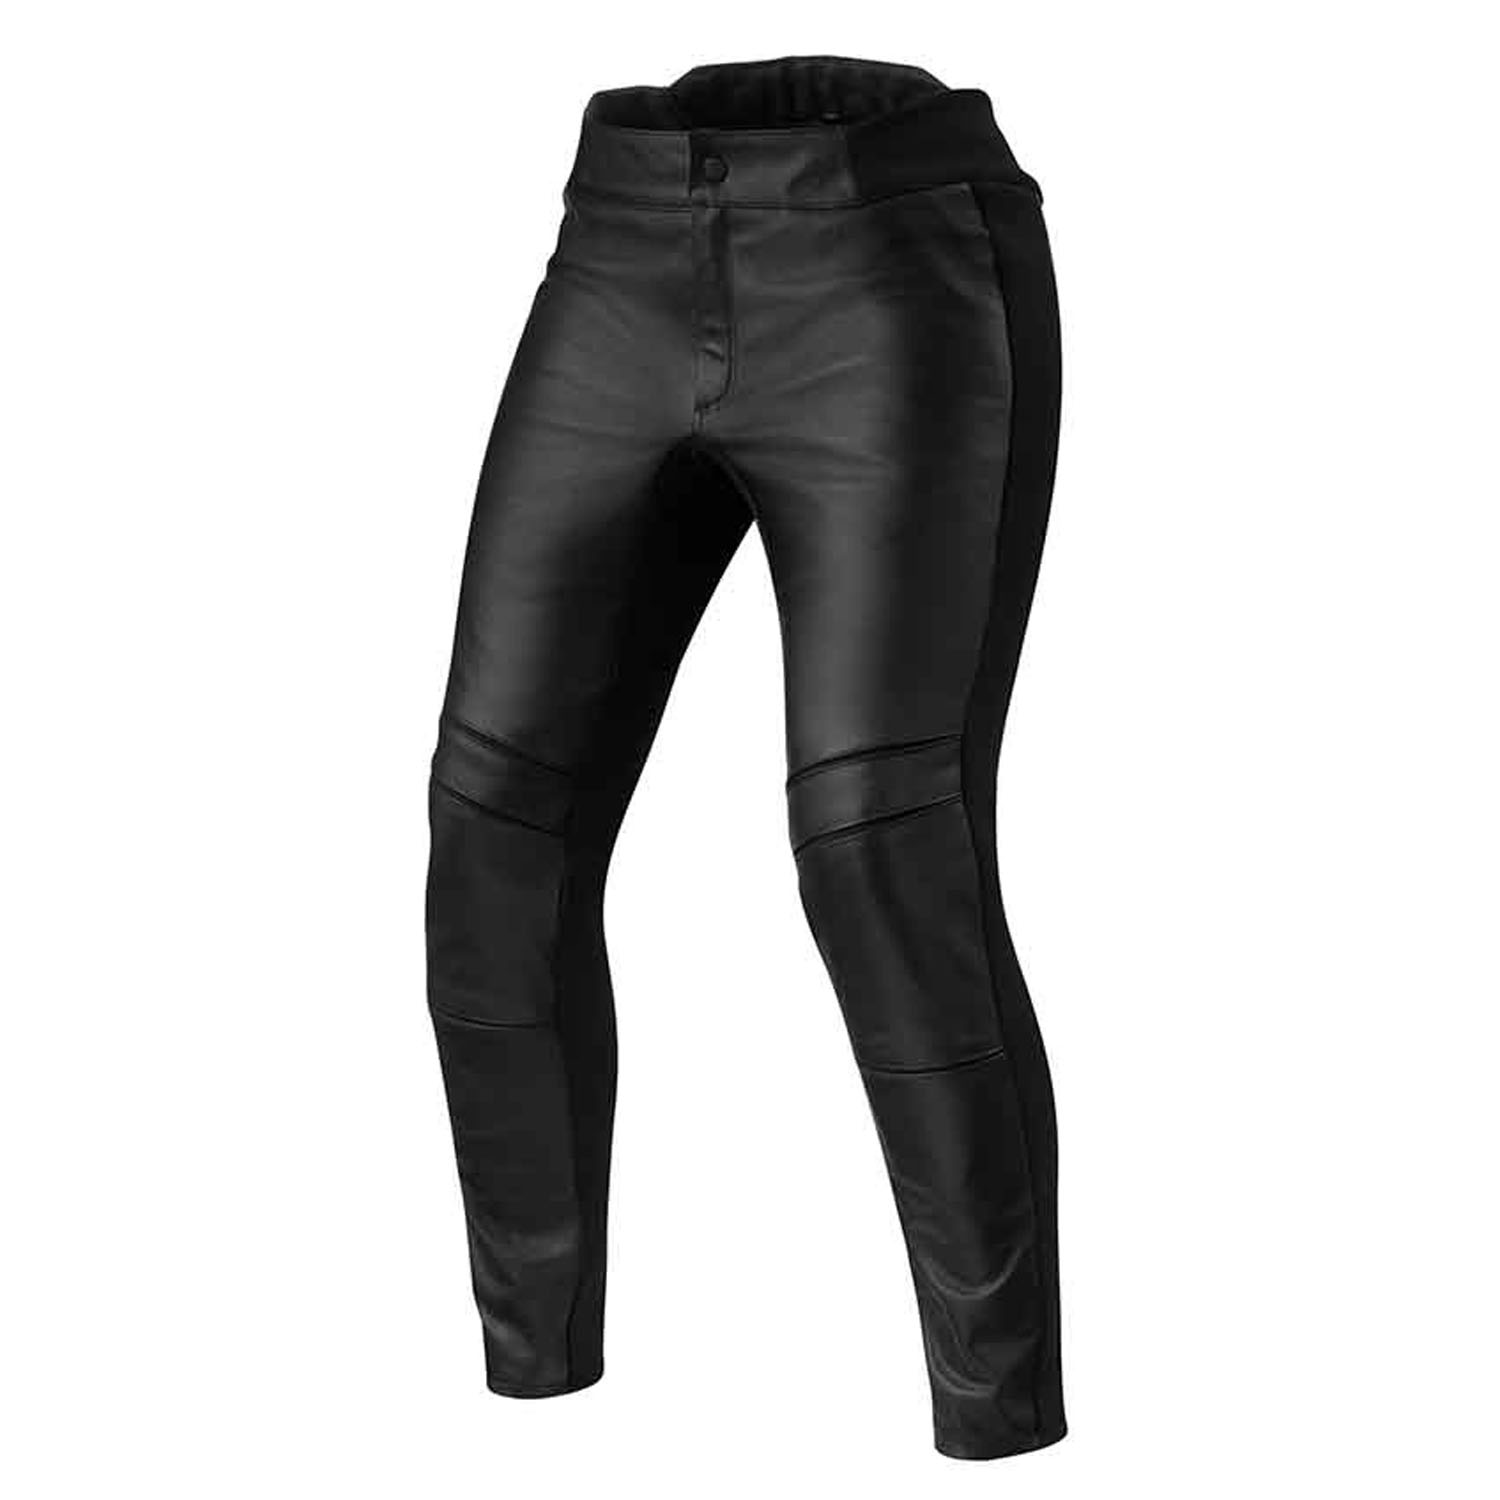 Image of REV'IT! Maci Ladies Black Standard Motorcycle Pants Size 42 ID 8700001359092